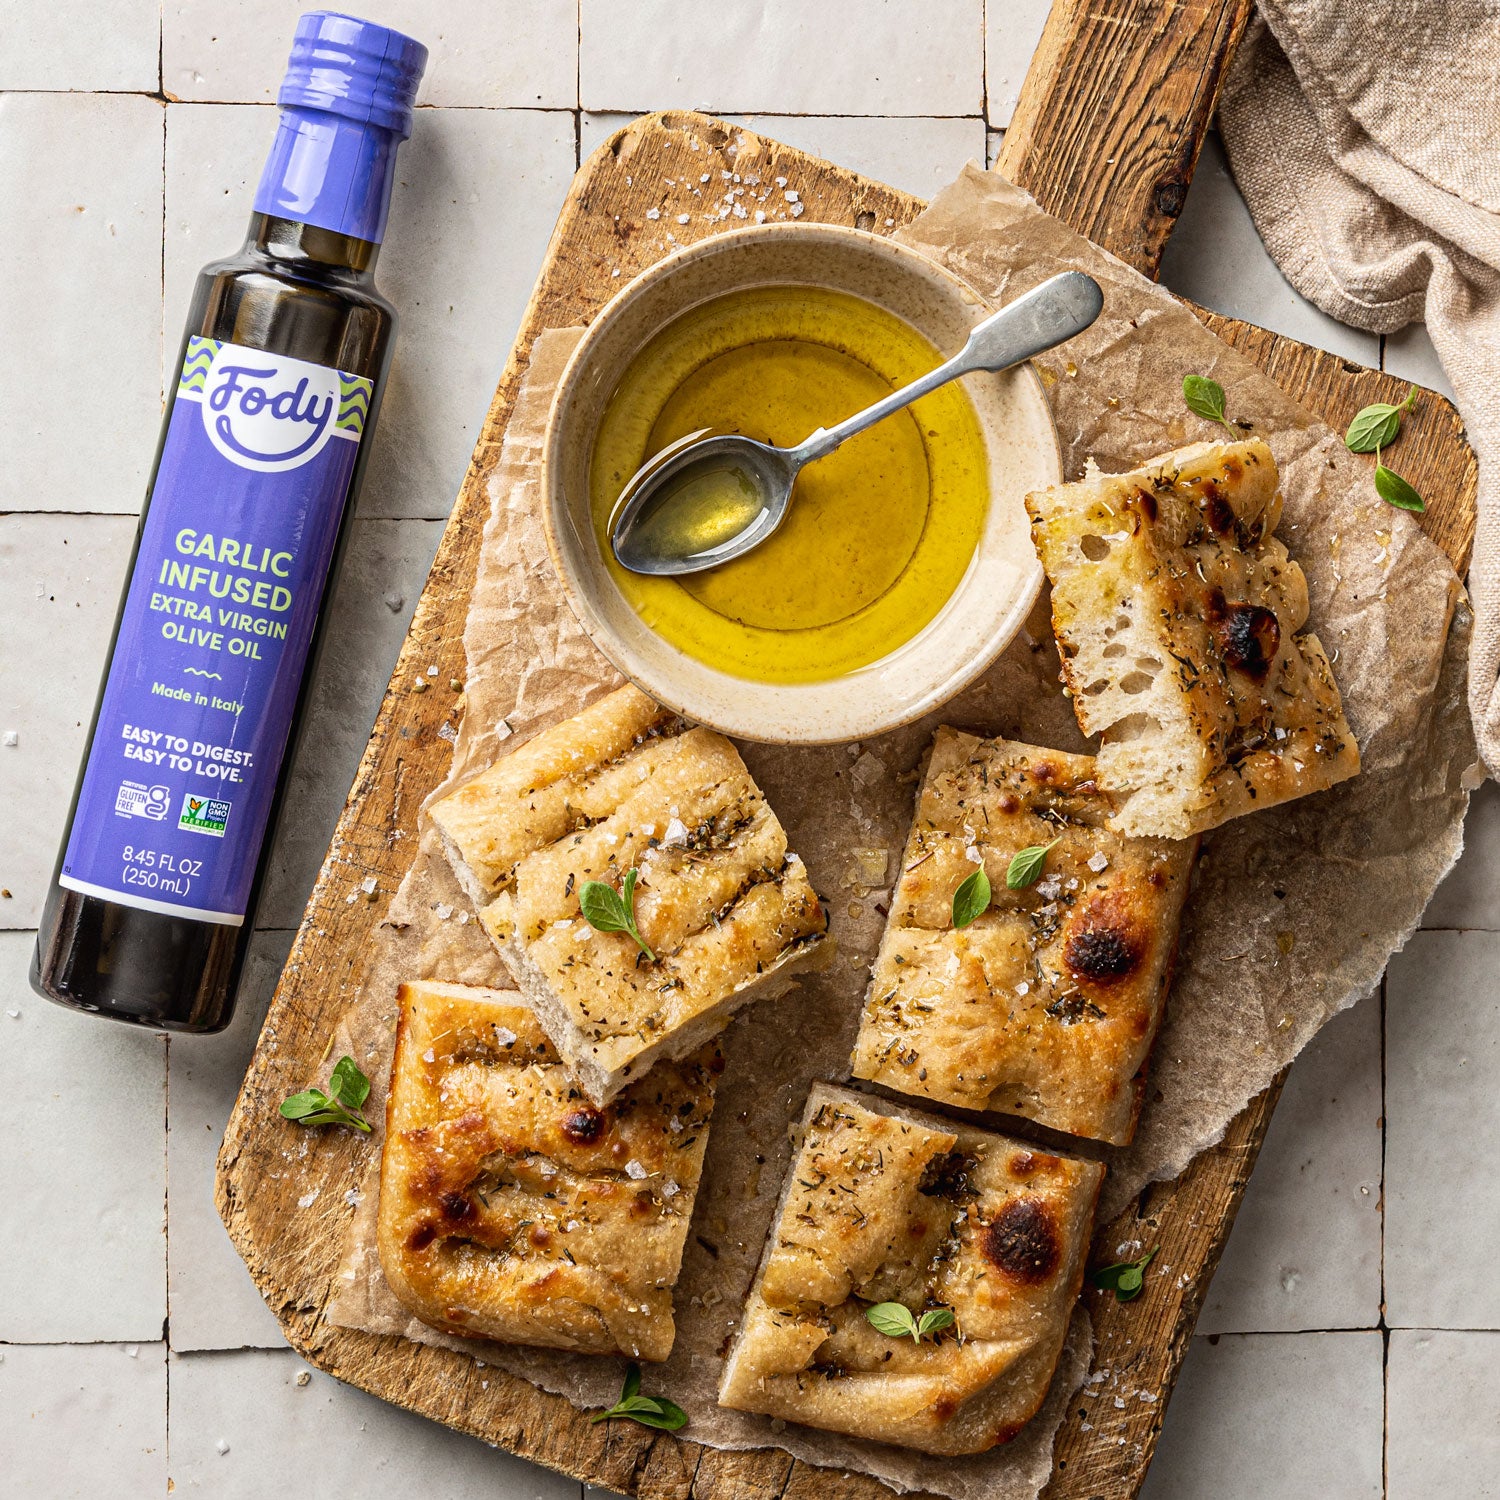 Huile d’olive aromatisée à l’ail